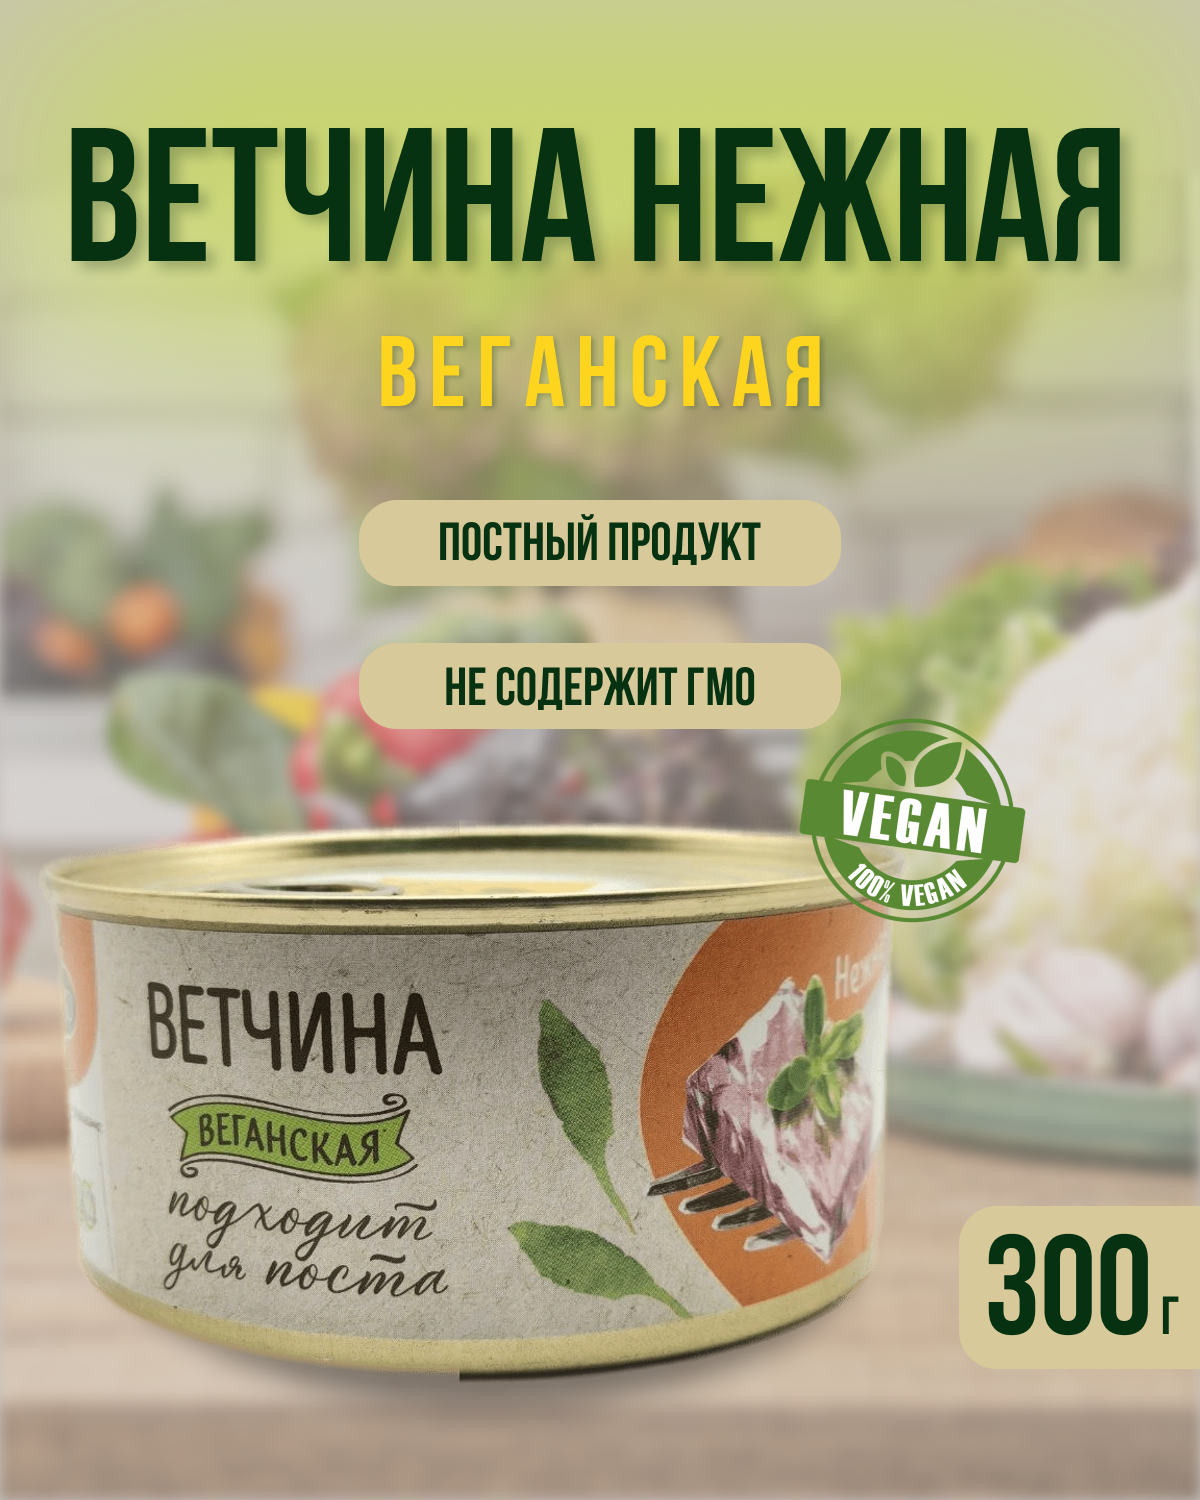 "Ветчина нежная" растительный продукт постный консервированный, VEGO, 300 гр